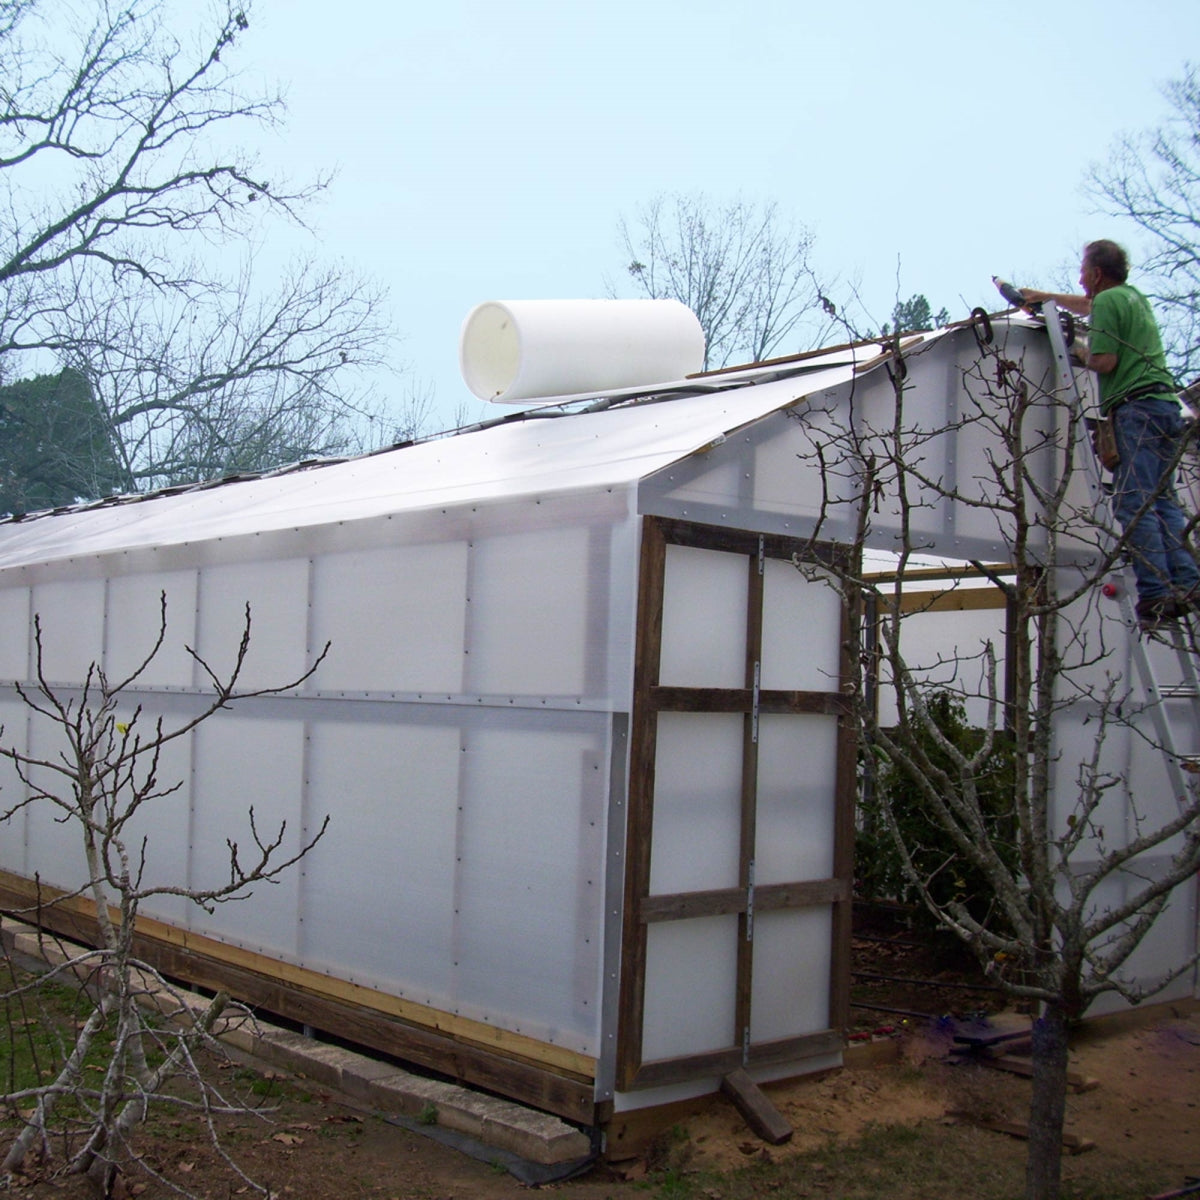 Solexx | Premium Professional Greenhouse Covering - Panels